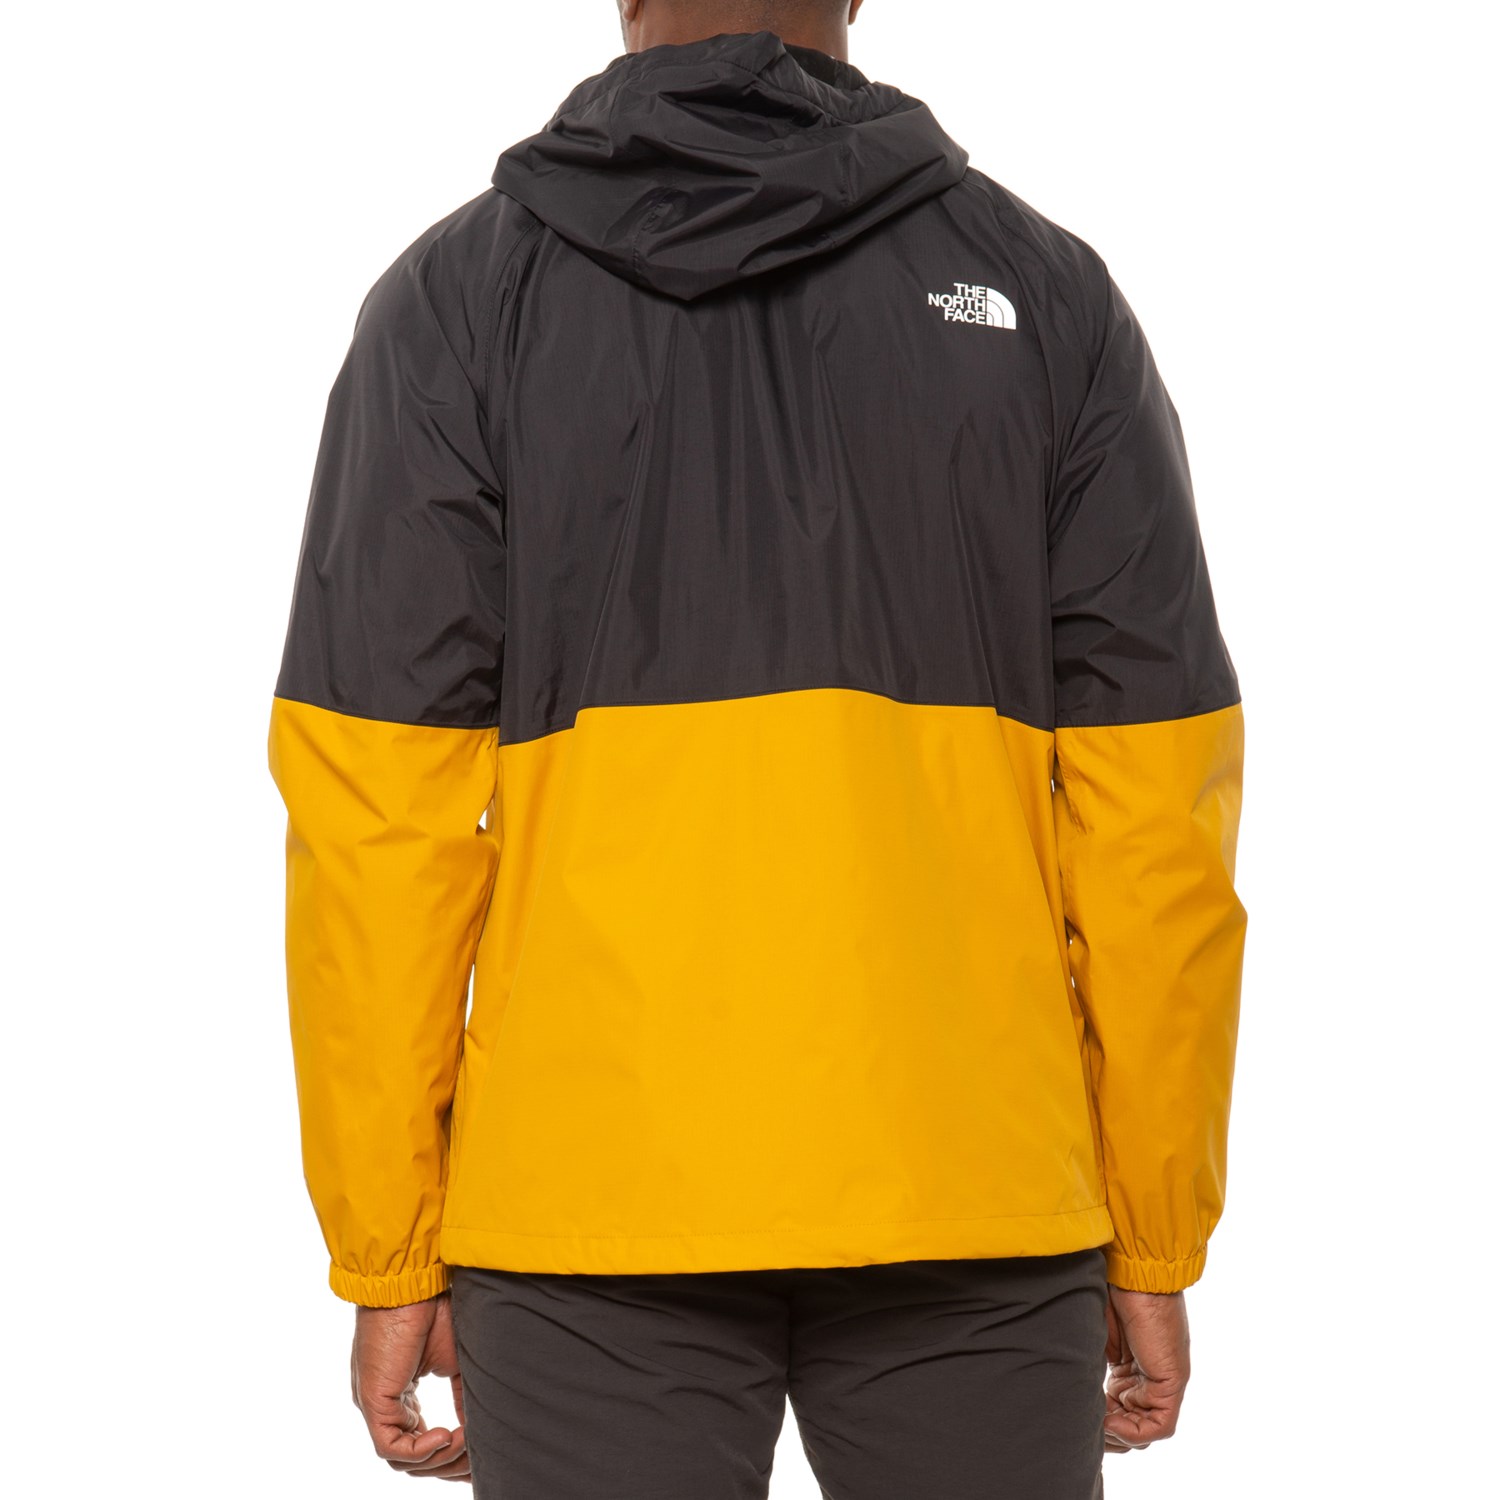 The North Face Antora Hooded Rain Jacket - Waterproof